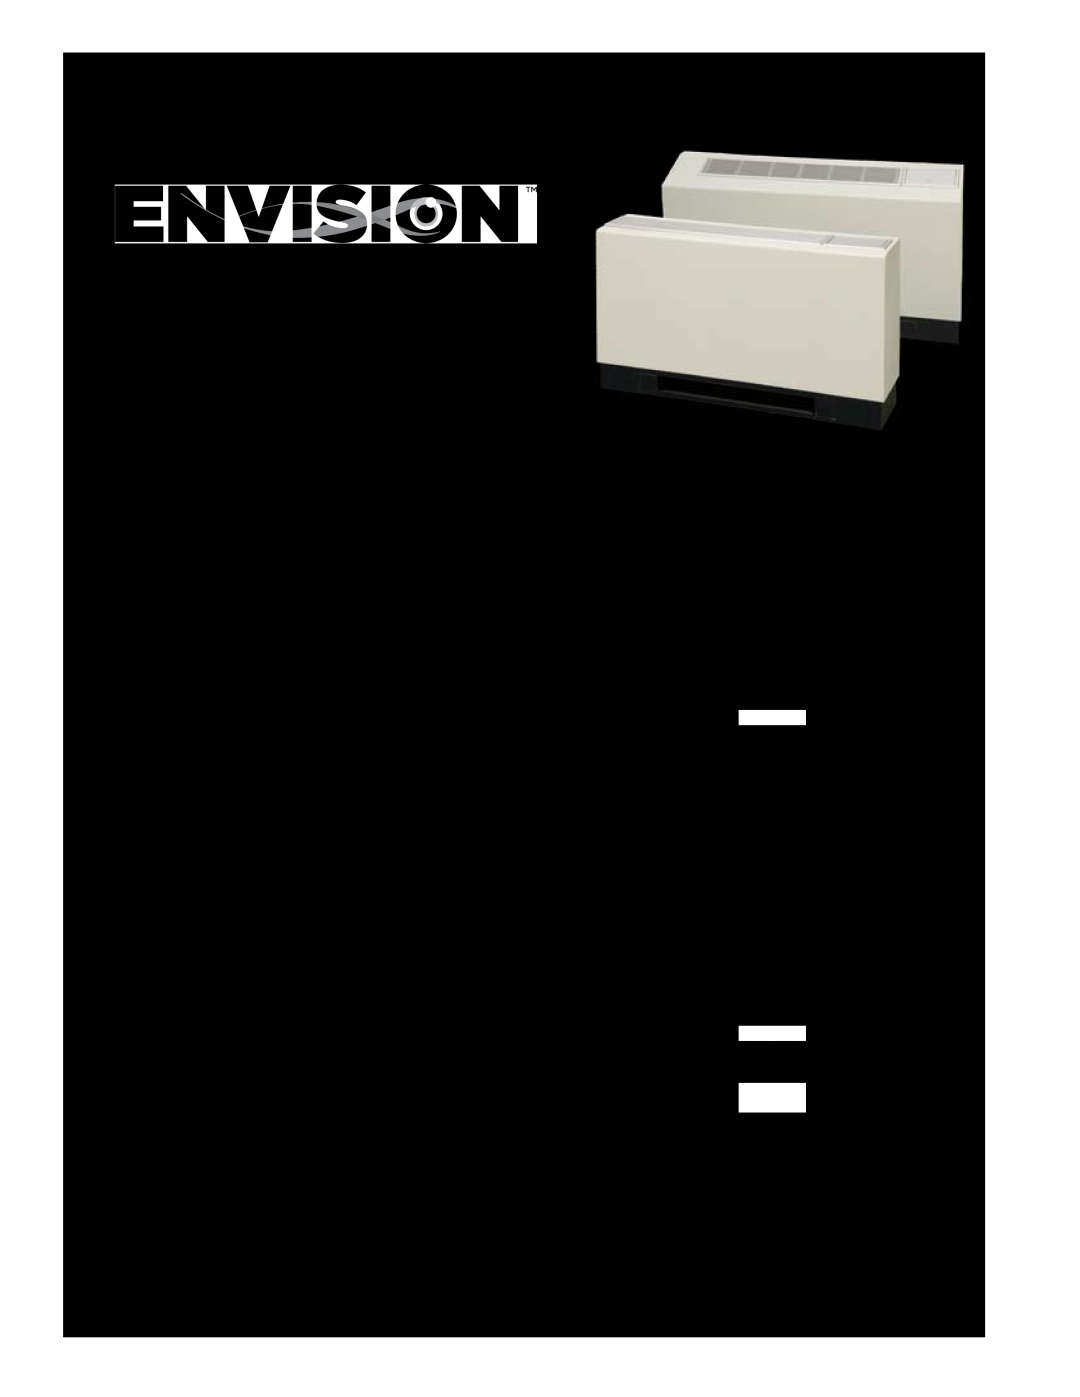 Envision Peripherals IM1609 08, IM1609 10 installation manual Model Nomenclature, Consoles 